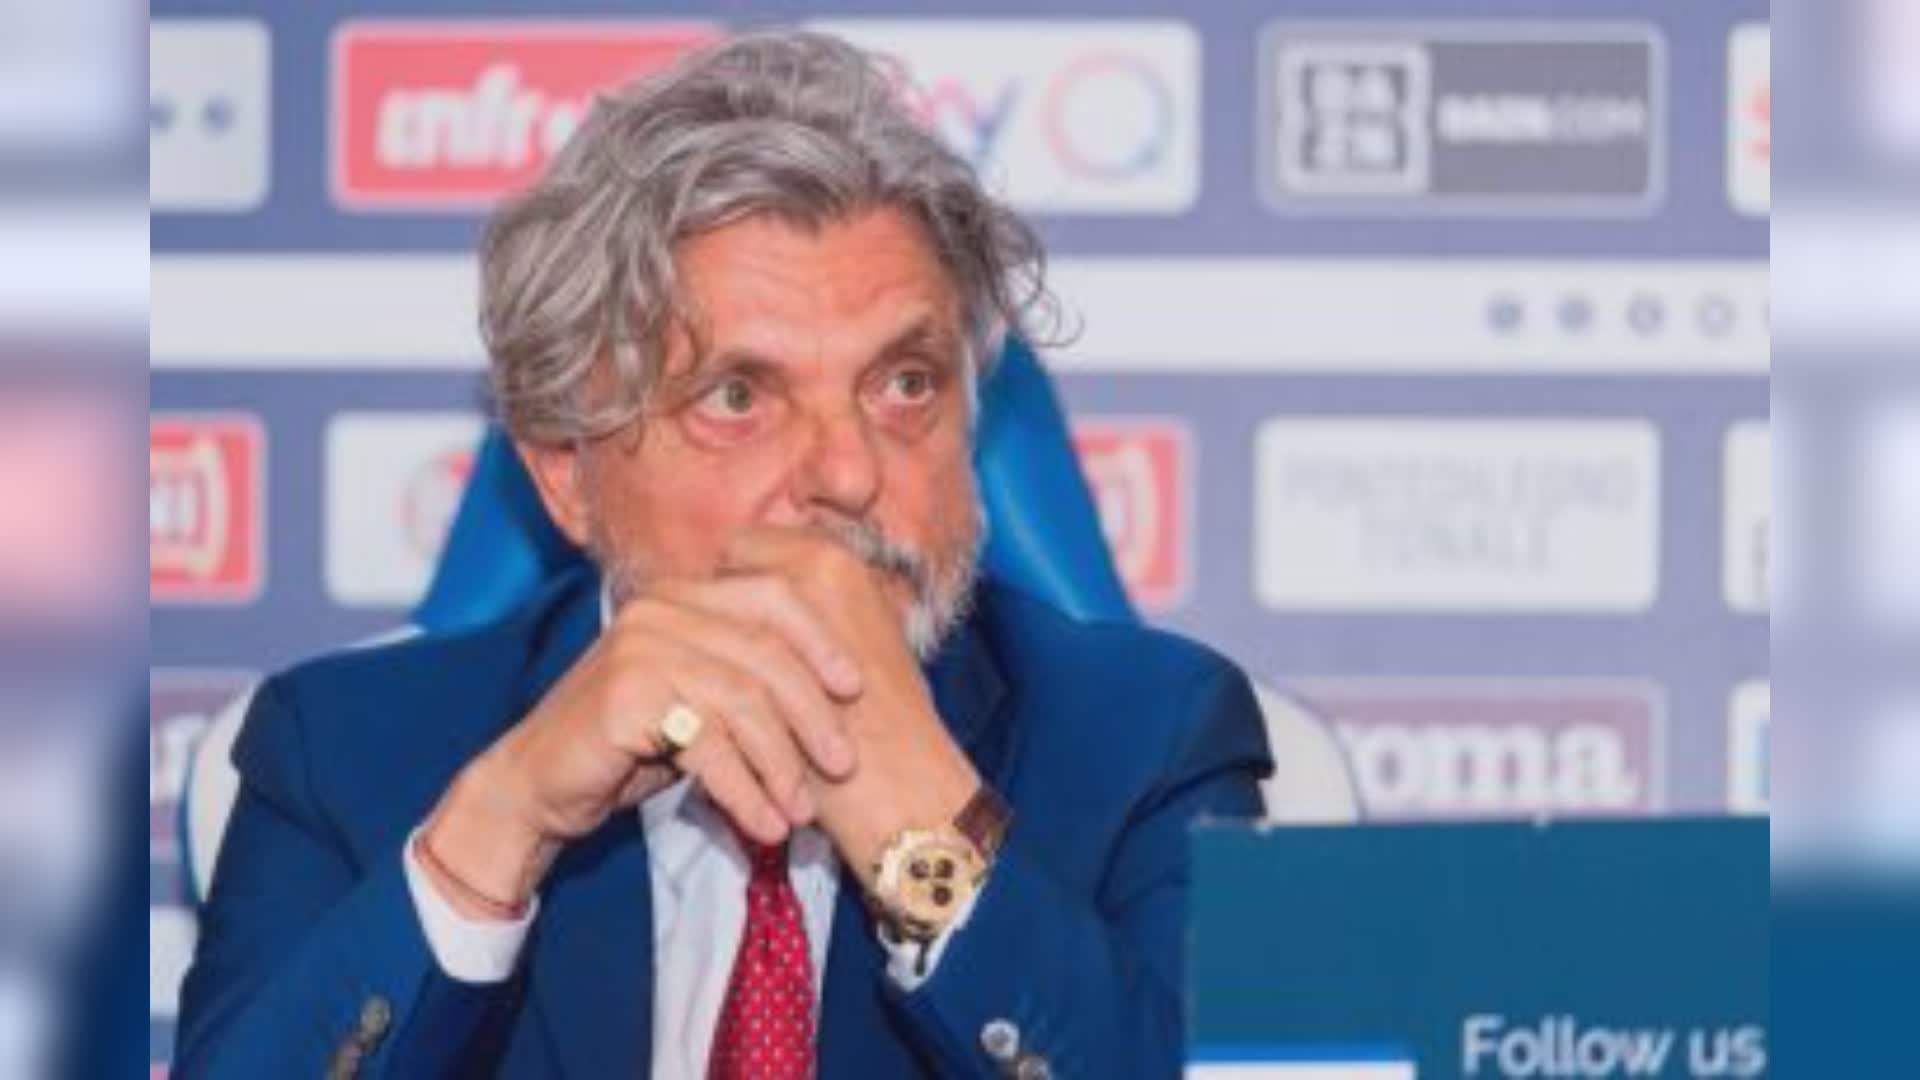 Ex Sampdoria, Ferrero denunciato: cambiata serratura di casa per evitare sequestro. Lui: "E' stato qualcun altro"